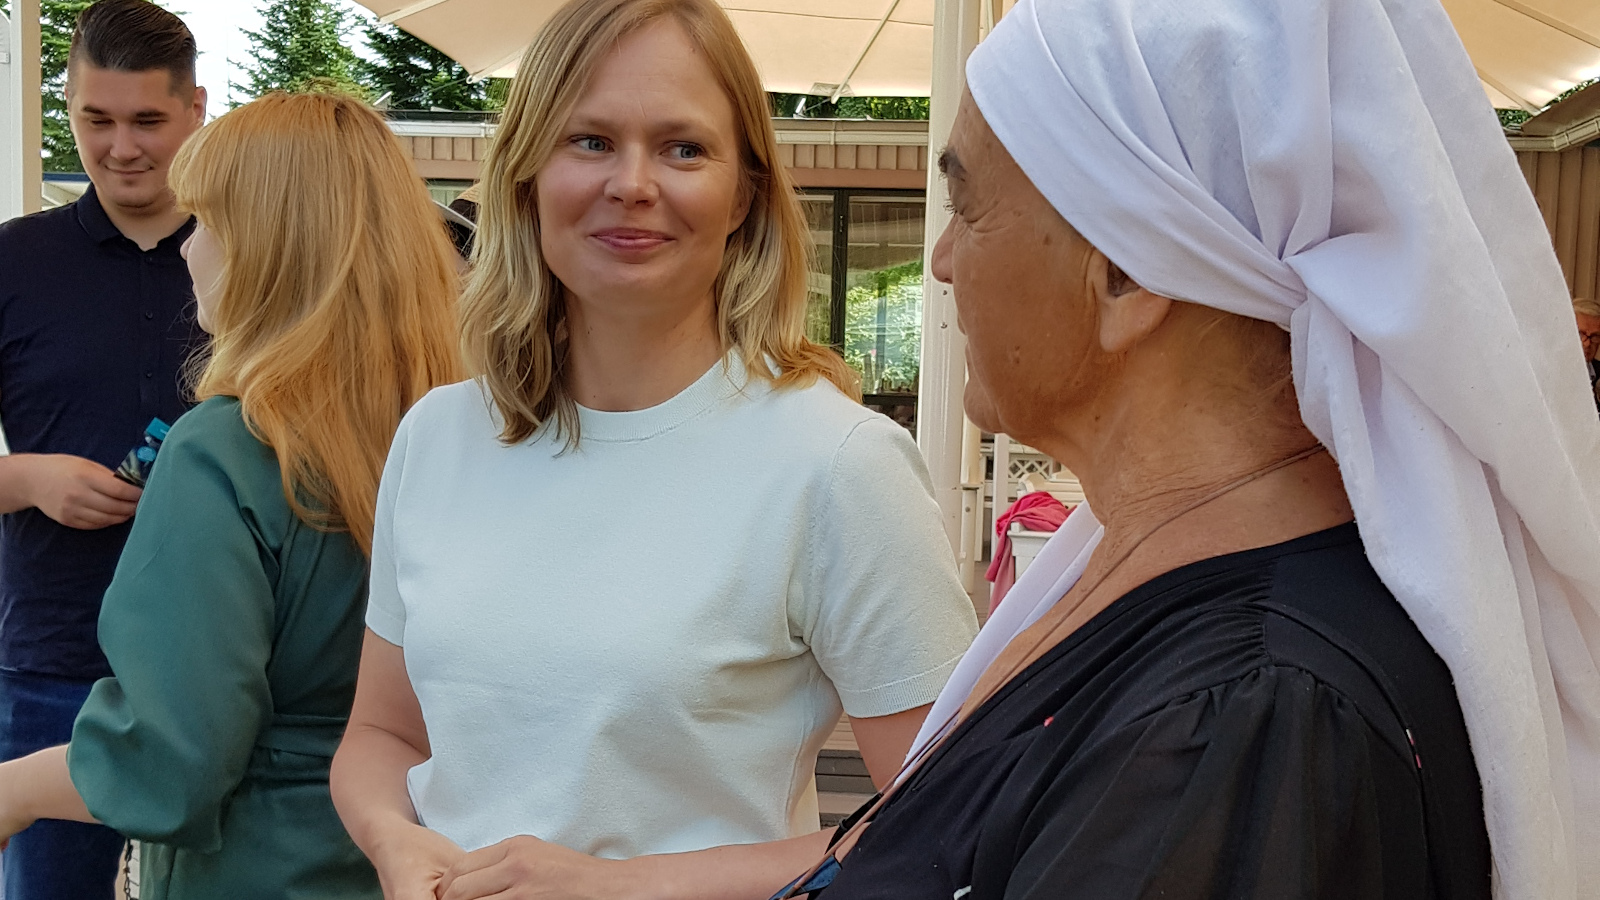 Kuvasasa ovat keskustelemassa Miina Äkkijyrkkä puoliksi selin ja ministeri Hanna Kosonen. Kuva on puolivartalokuva.